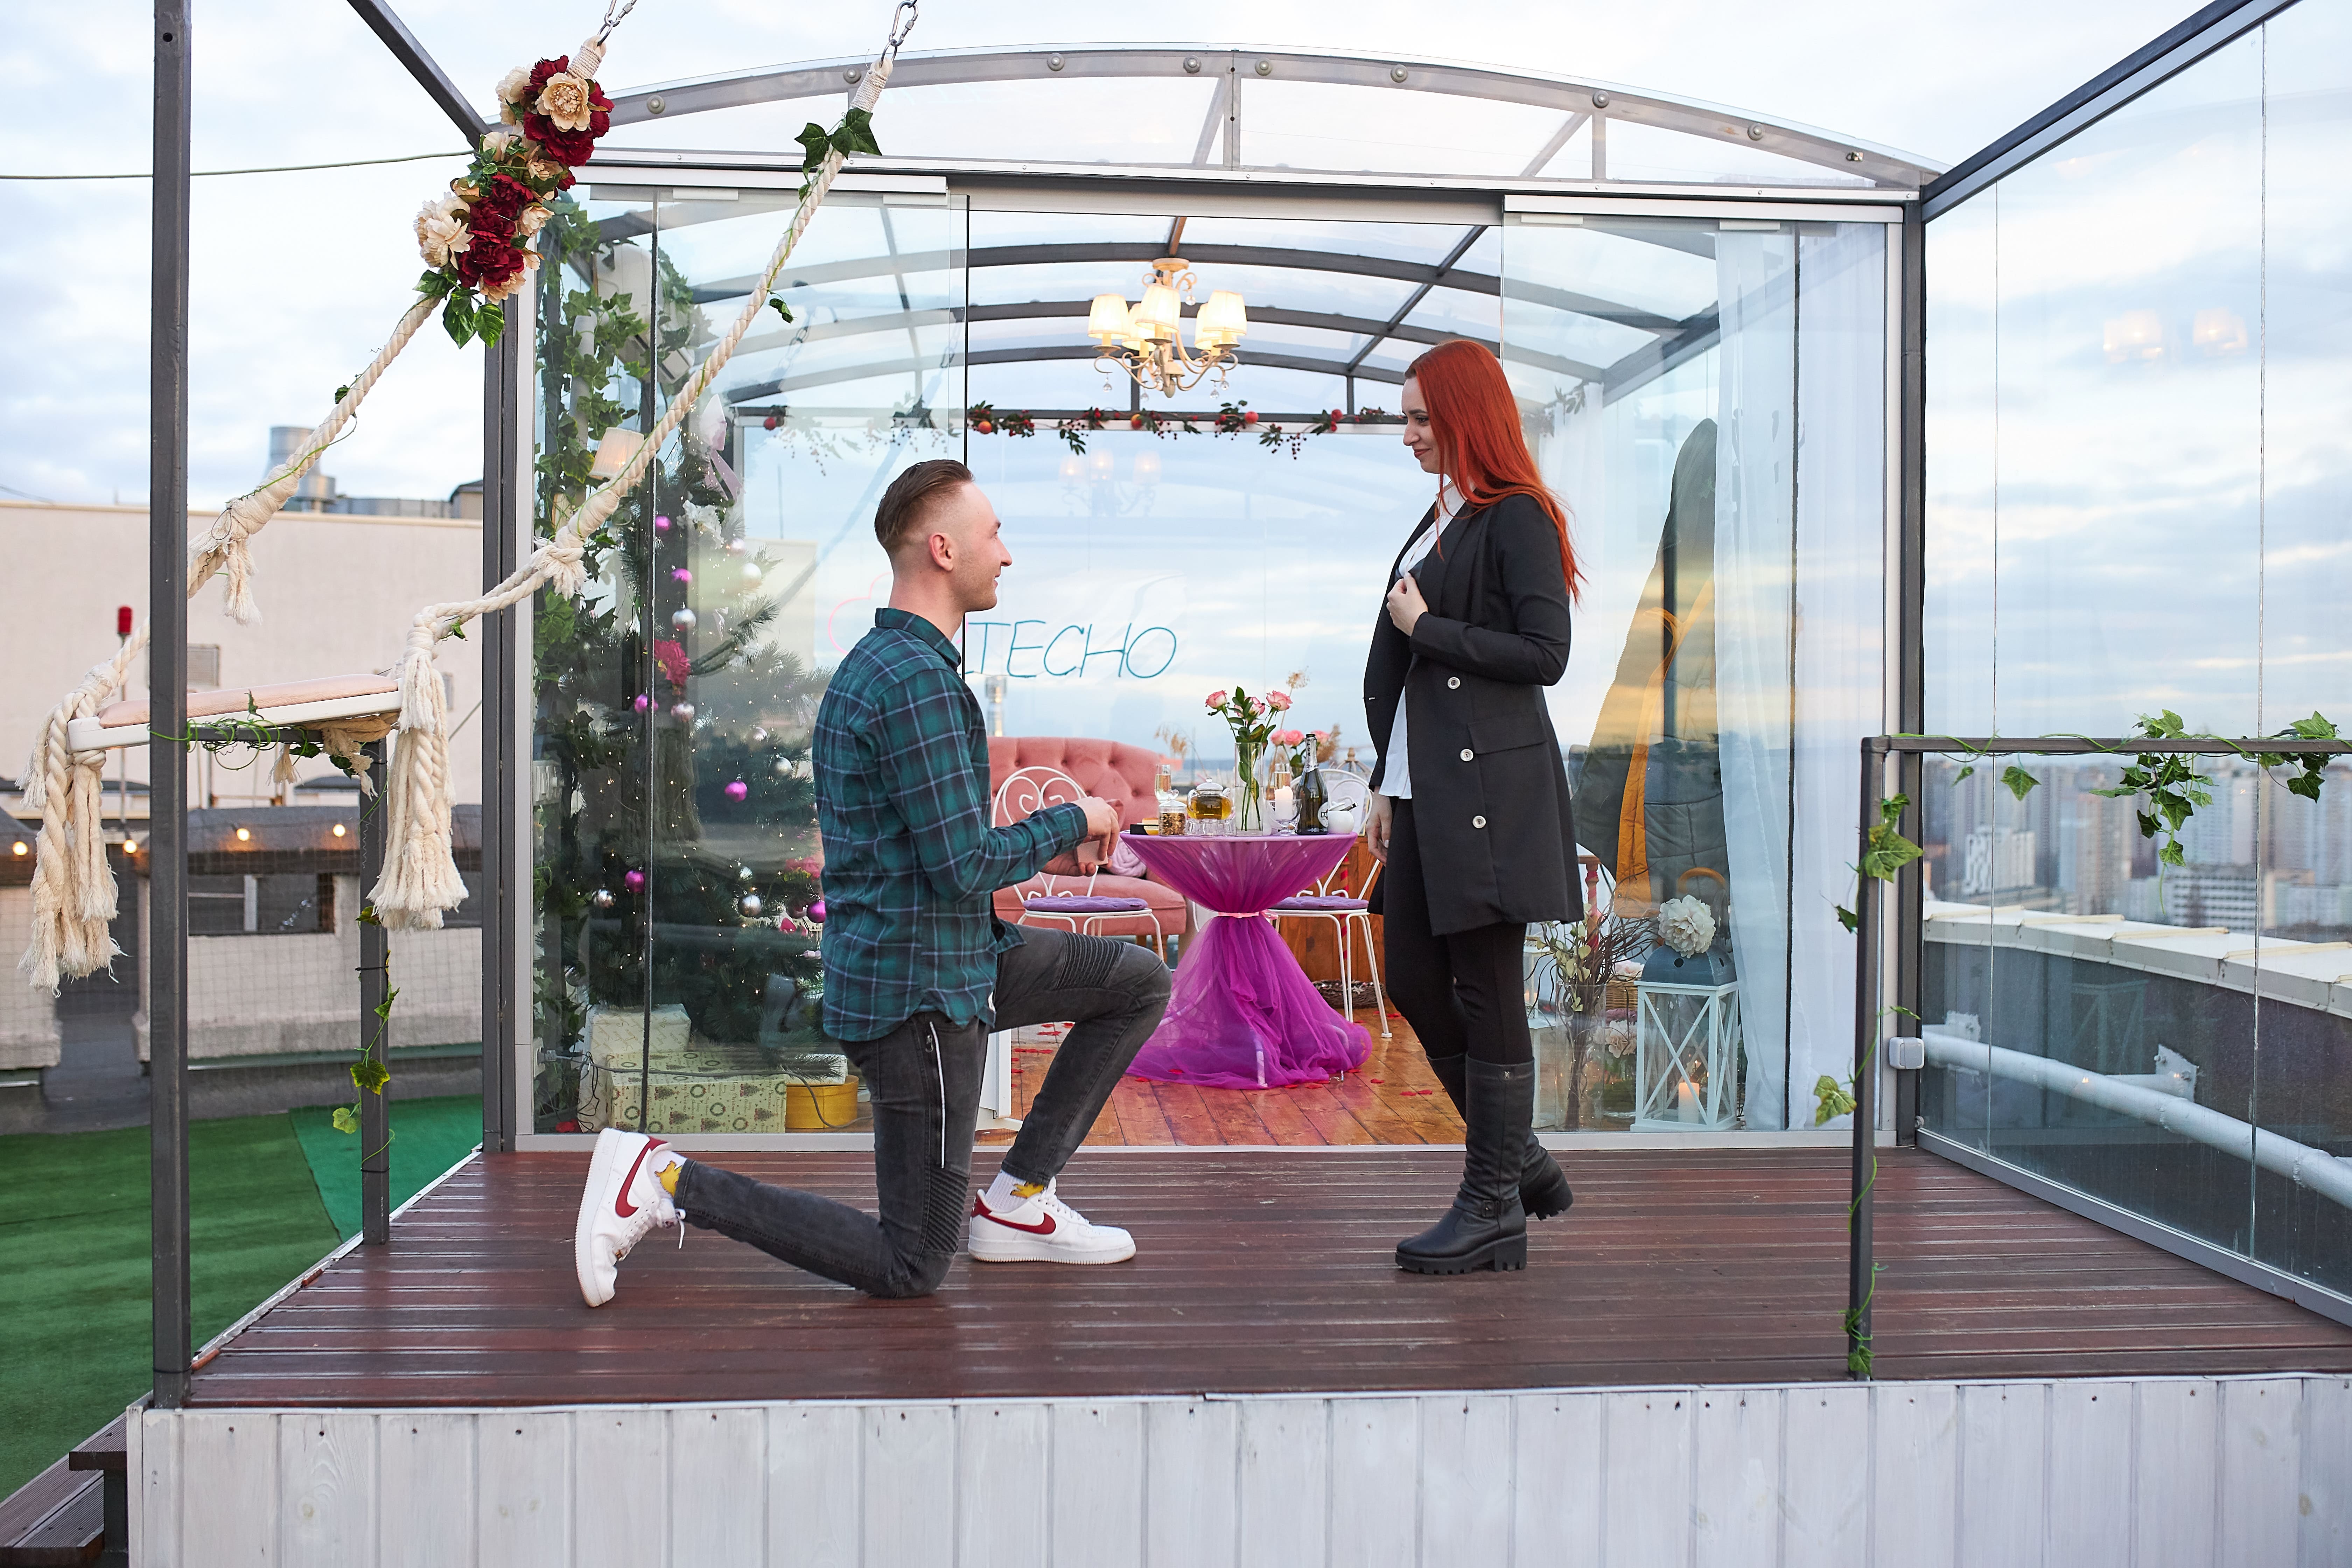 Романтичне побачення на даху в Києві